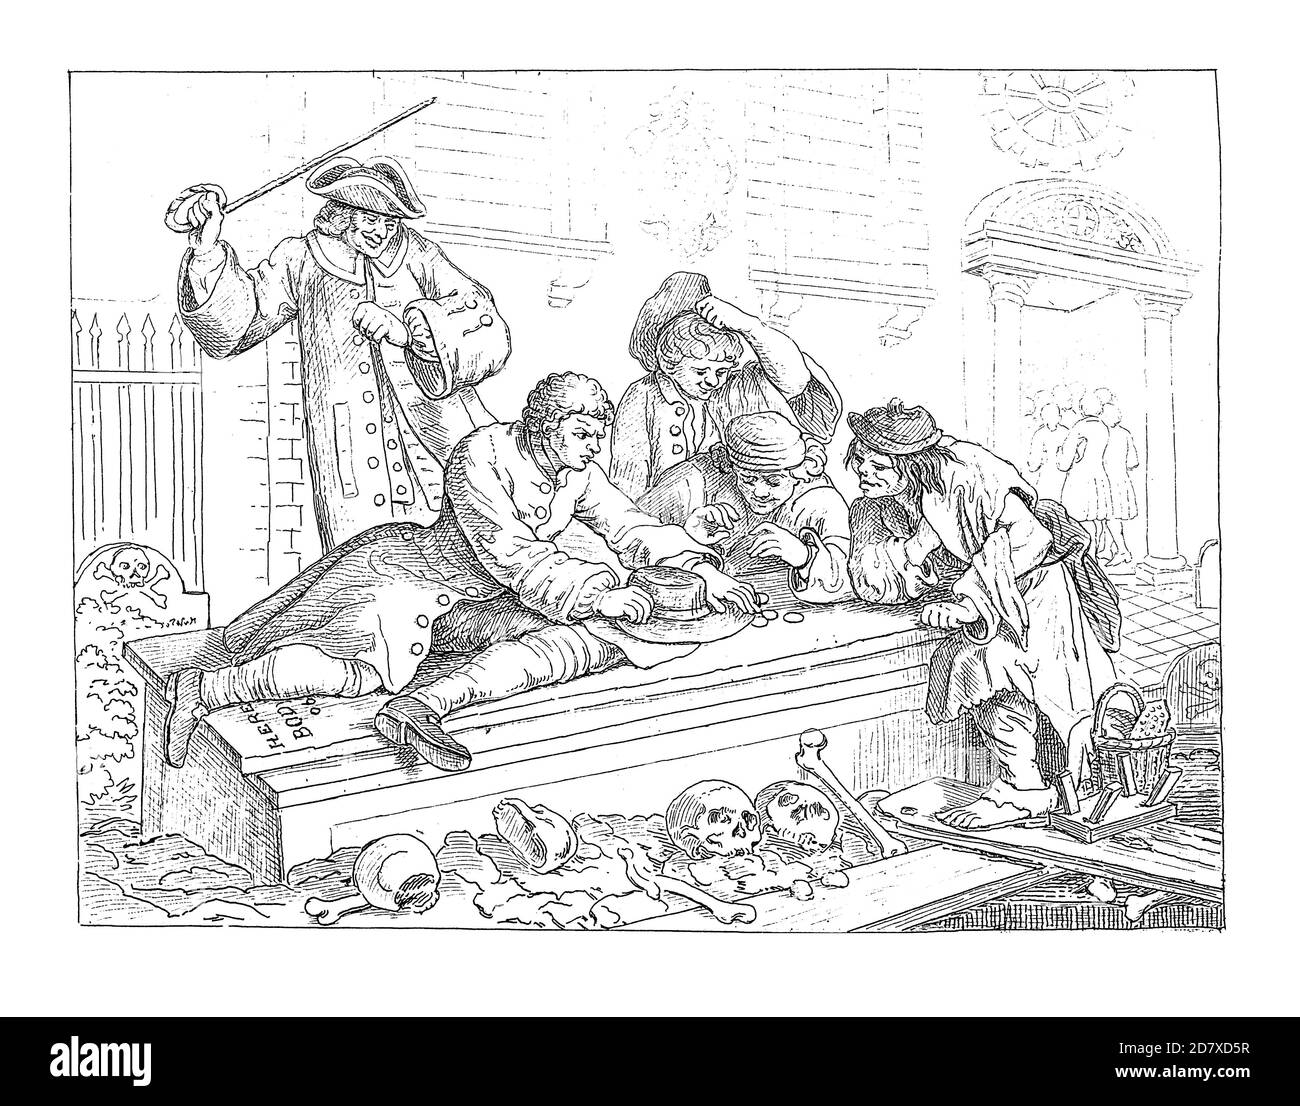 Illustrazione del XIX secolo che raffigura la "Prentice al gioco nella Chiesa Yard, durante il servizio Divino, piatto da 12 incisioni legate alla trama (chiamato Foto Stock